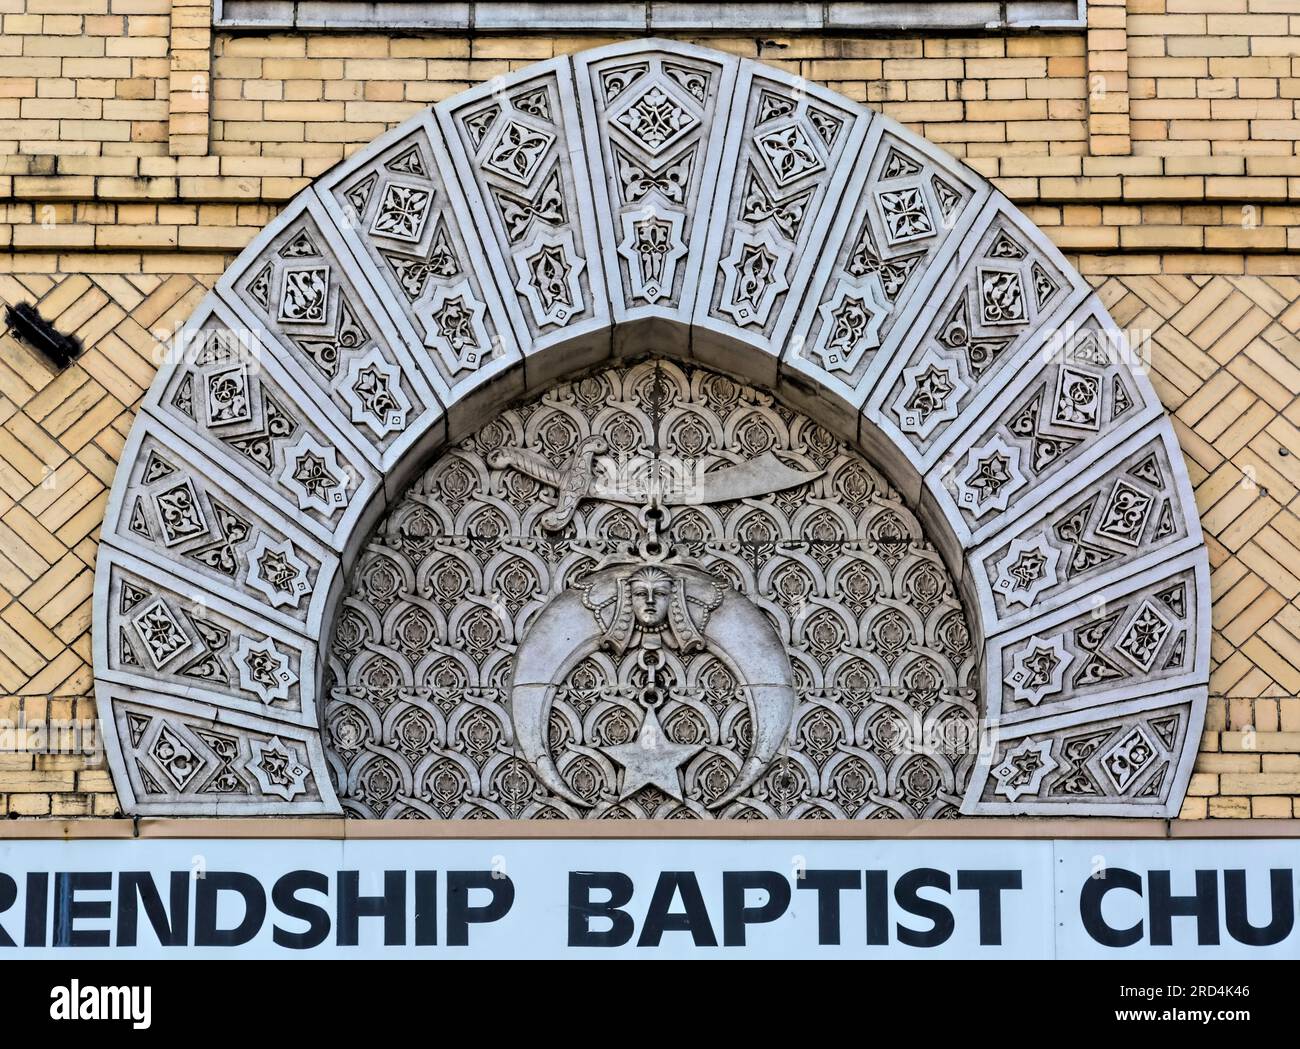 Bedford Stuyvesant: Friendship Baptist Church, costruita nel 1910 nell'eclettico risveglio moresco, era originariamente il Tempio di Kismet, per un capitolo Shriner. Foto Stock